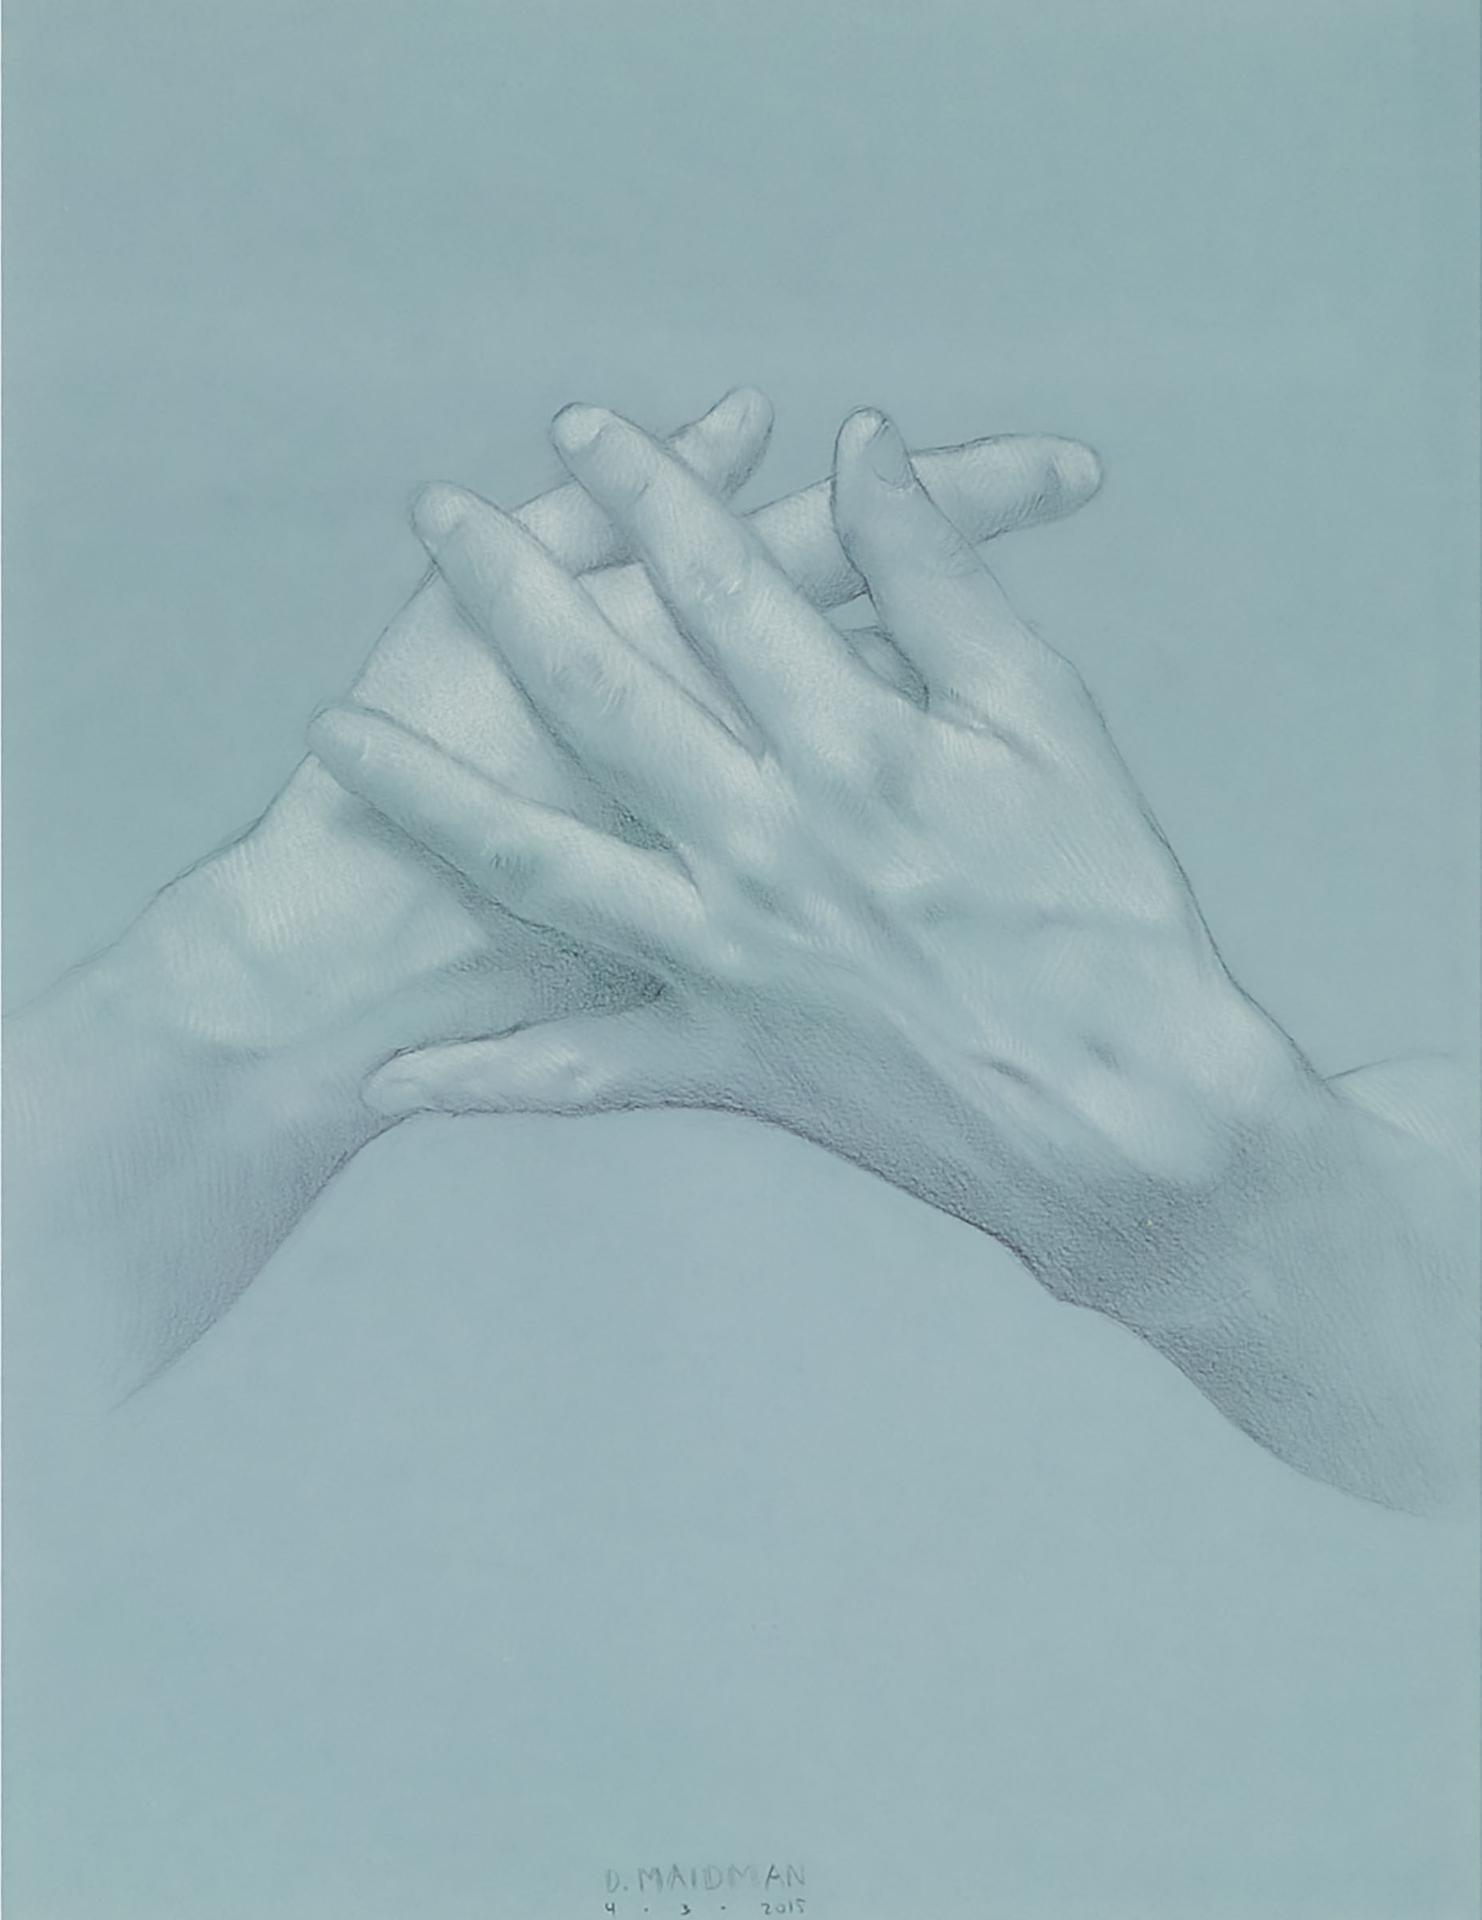 Daniel Maidman - Untitled (Hands), 2015